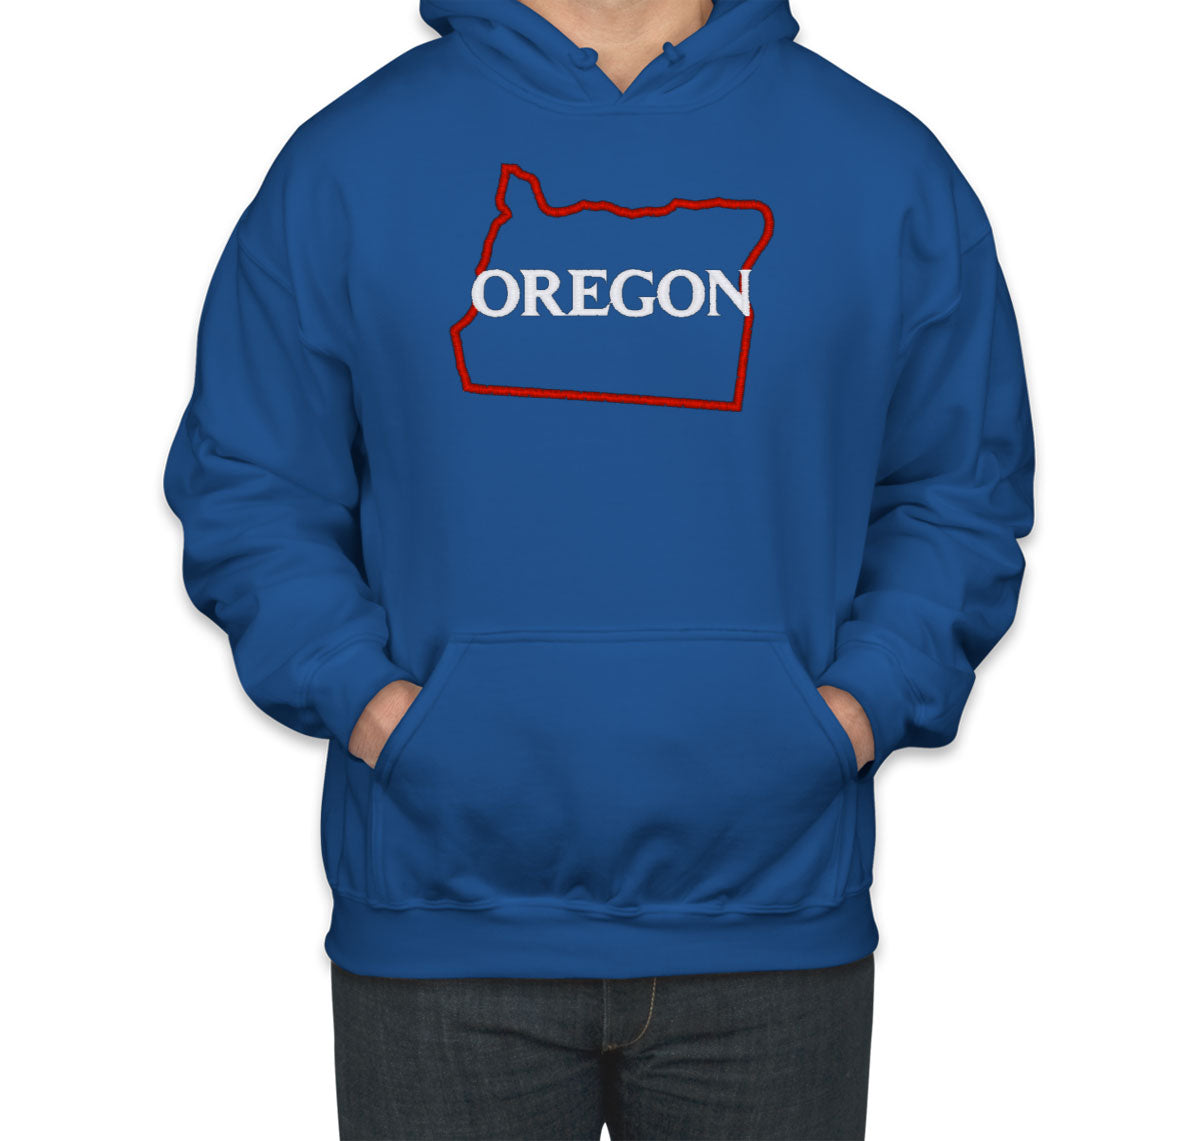 Oregon Embroidered Unisex Hoodie